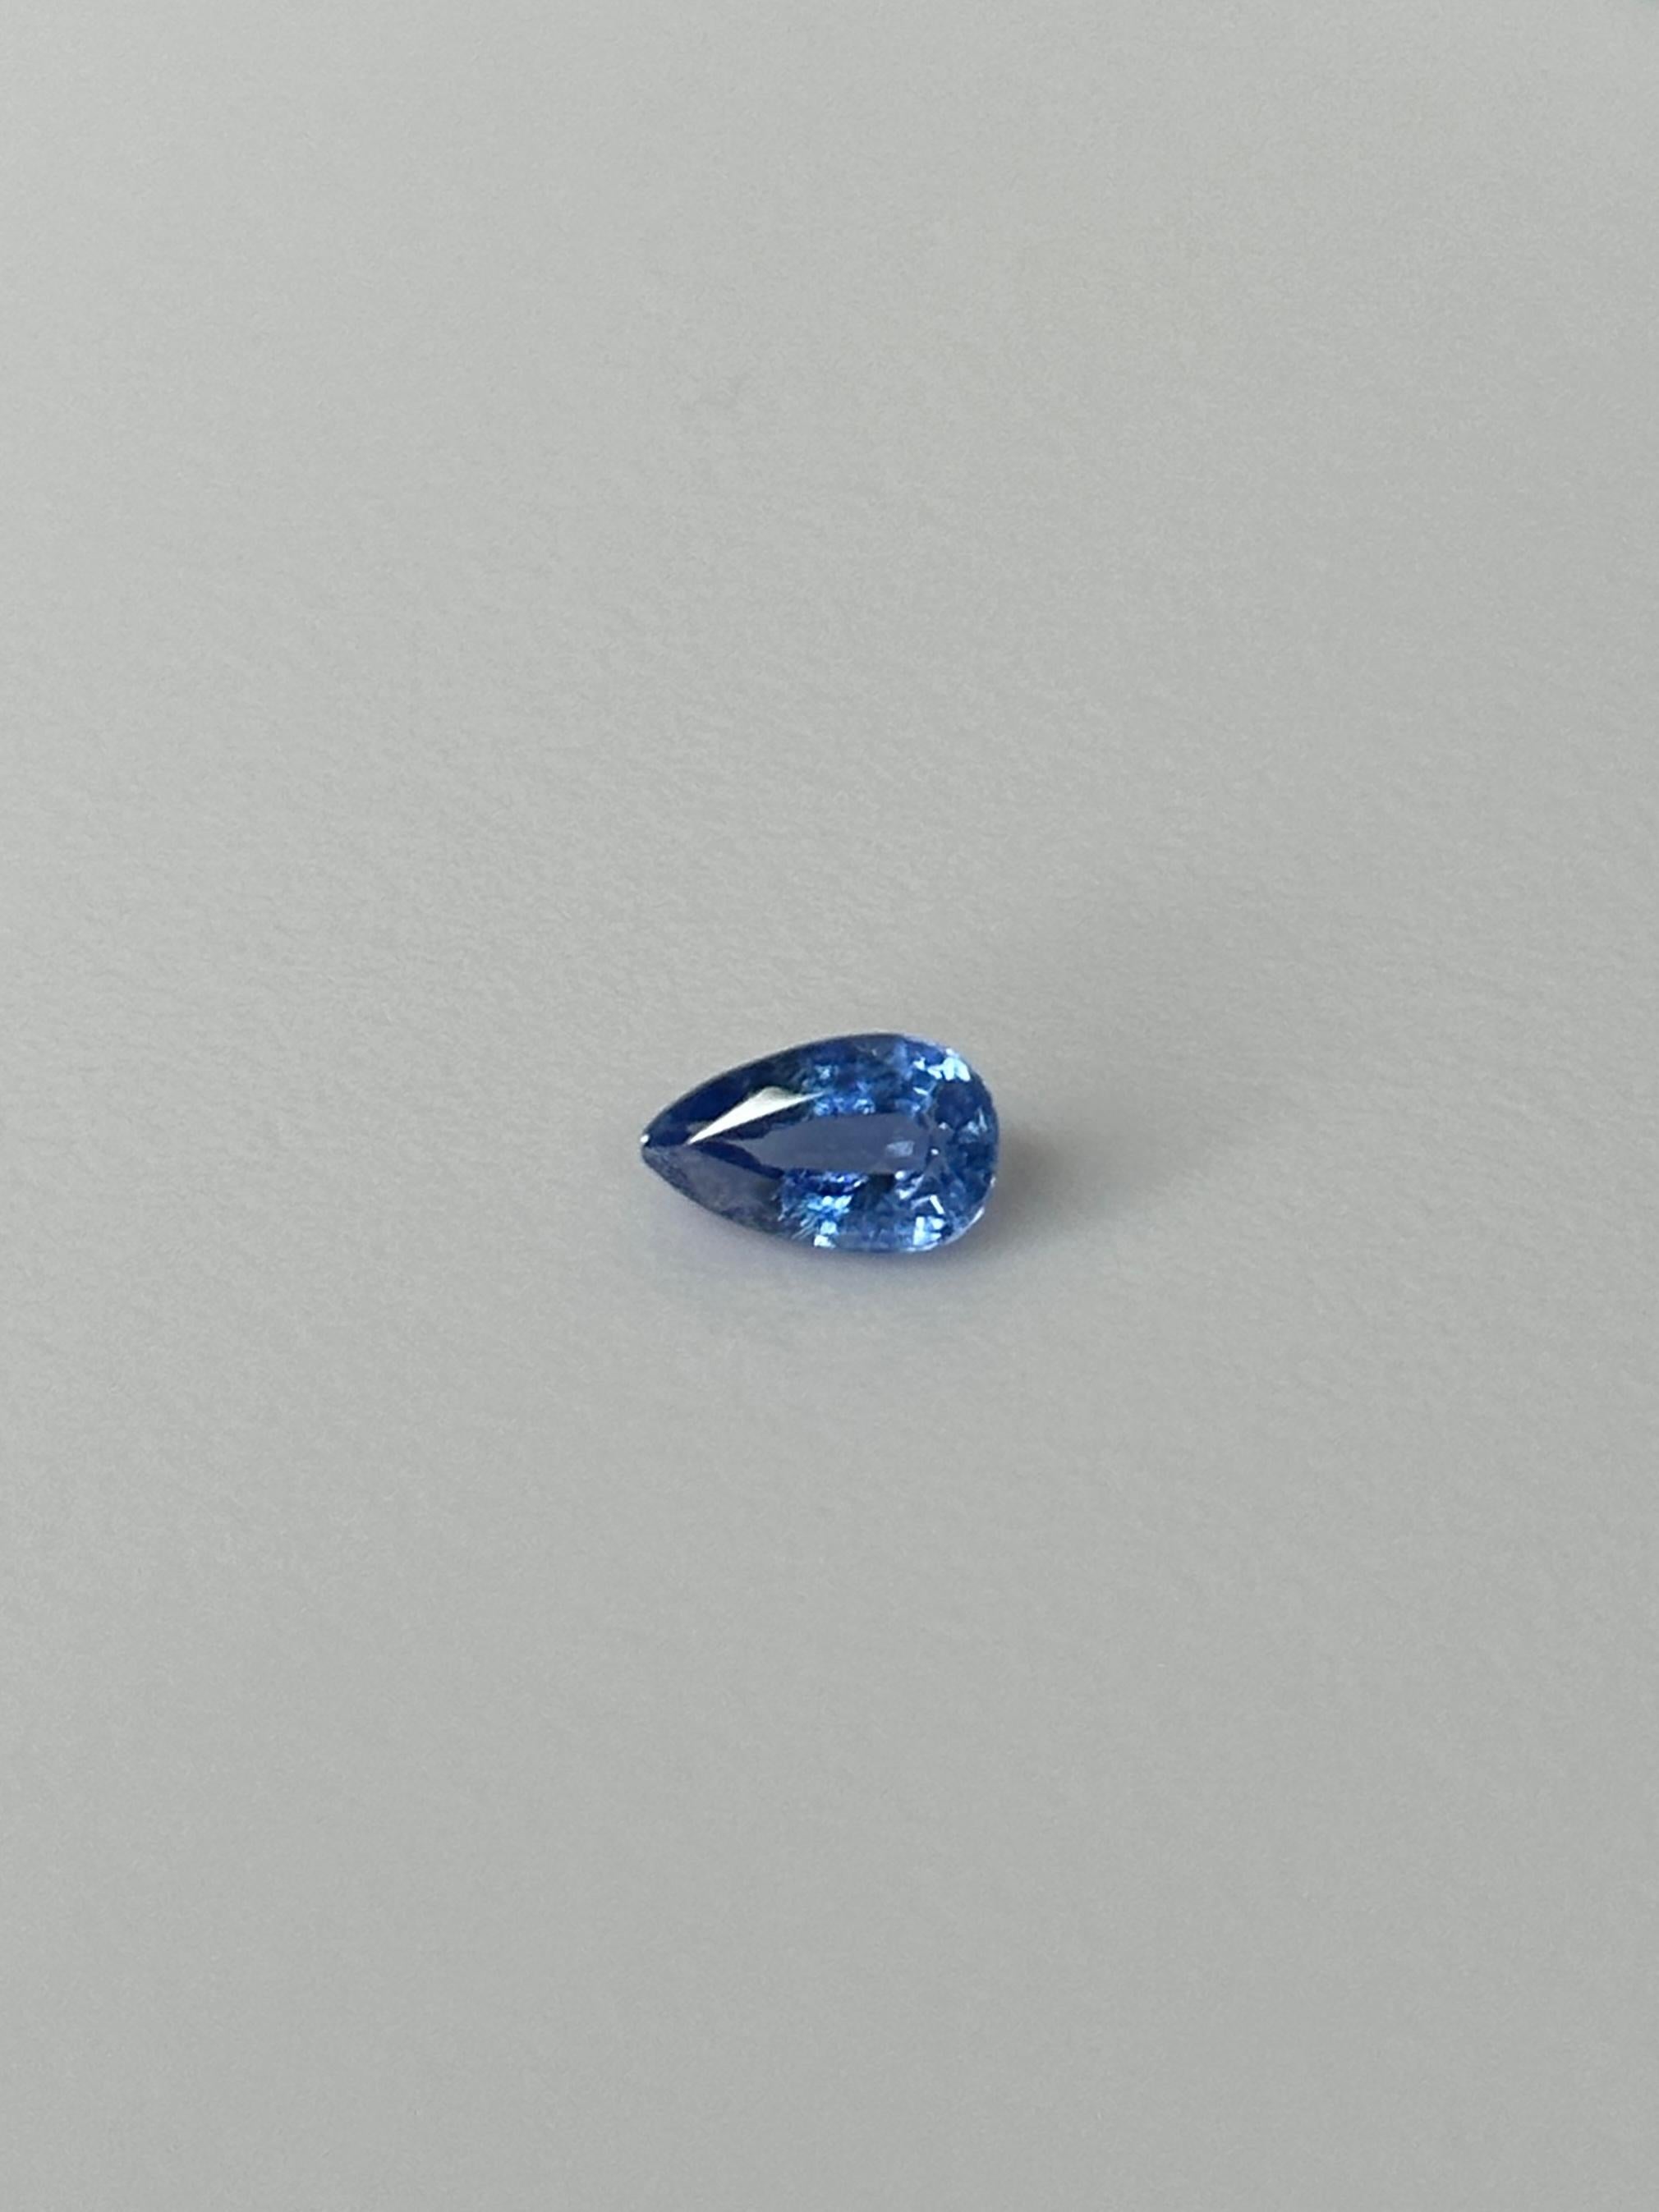 Kyanit, ein Halbedelstein mit einem einzigartigen, zarten Blau, der auf der ganzen Welt zu finden ist.
Die hochwertigsten Kyanite mit den stärksten und tiefsten Blautönen findet man jedoch in den Bergen Nepals und Tibets.
Dieser 1,30 Karat schwere